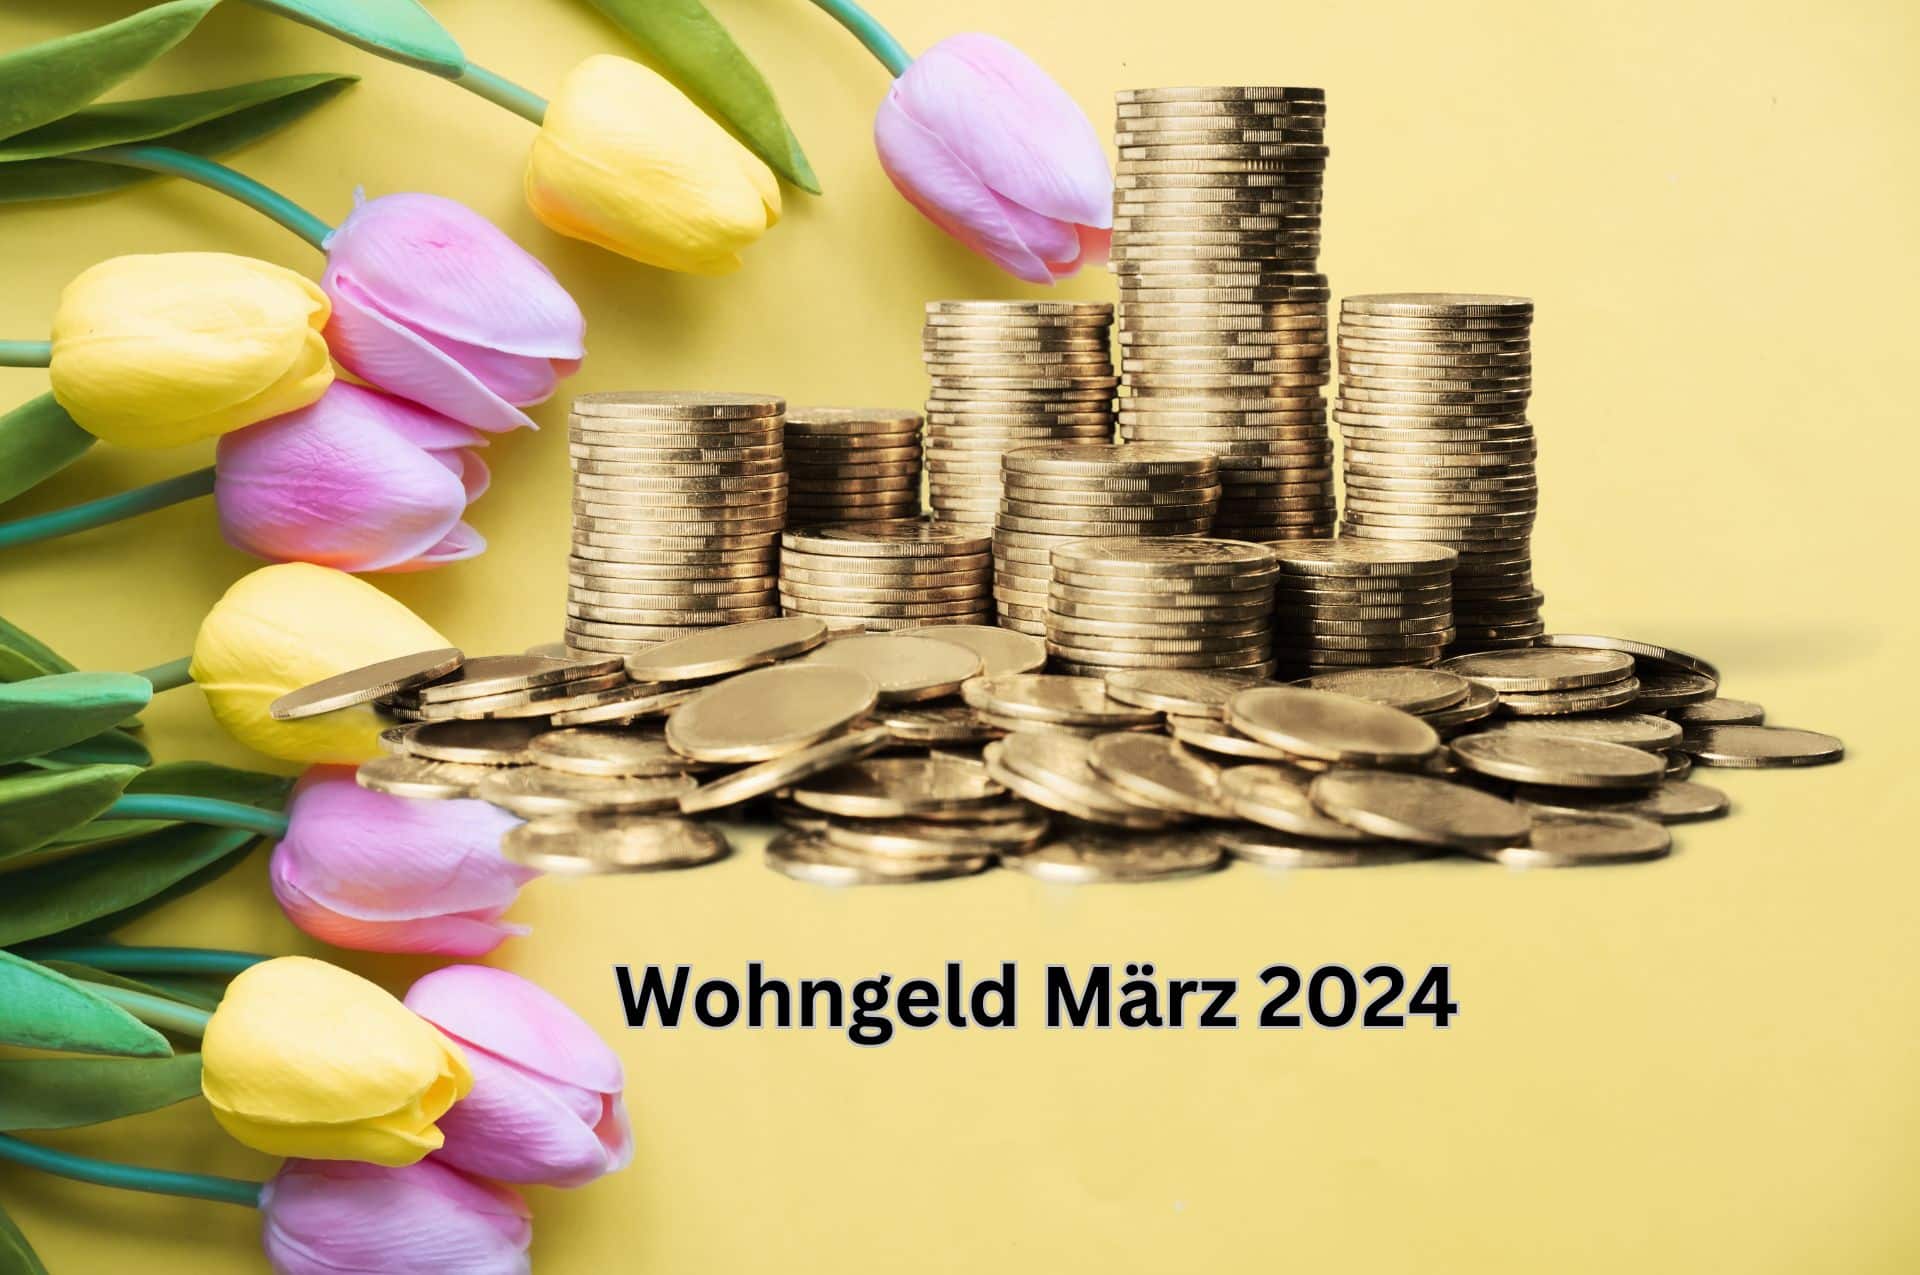 Wohngeld Termin und Zahlung im März 2024